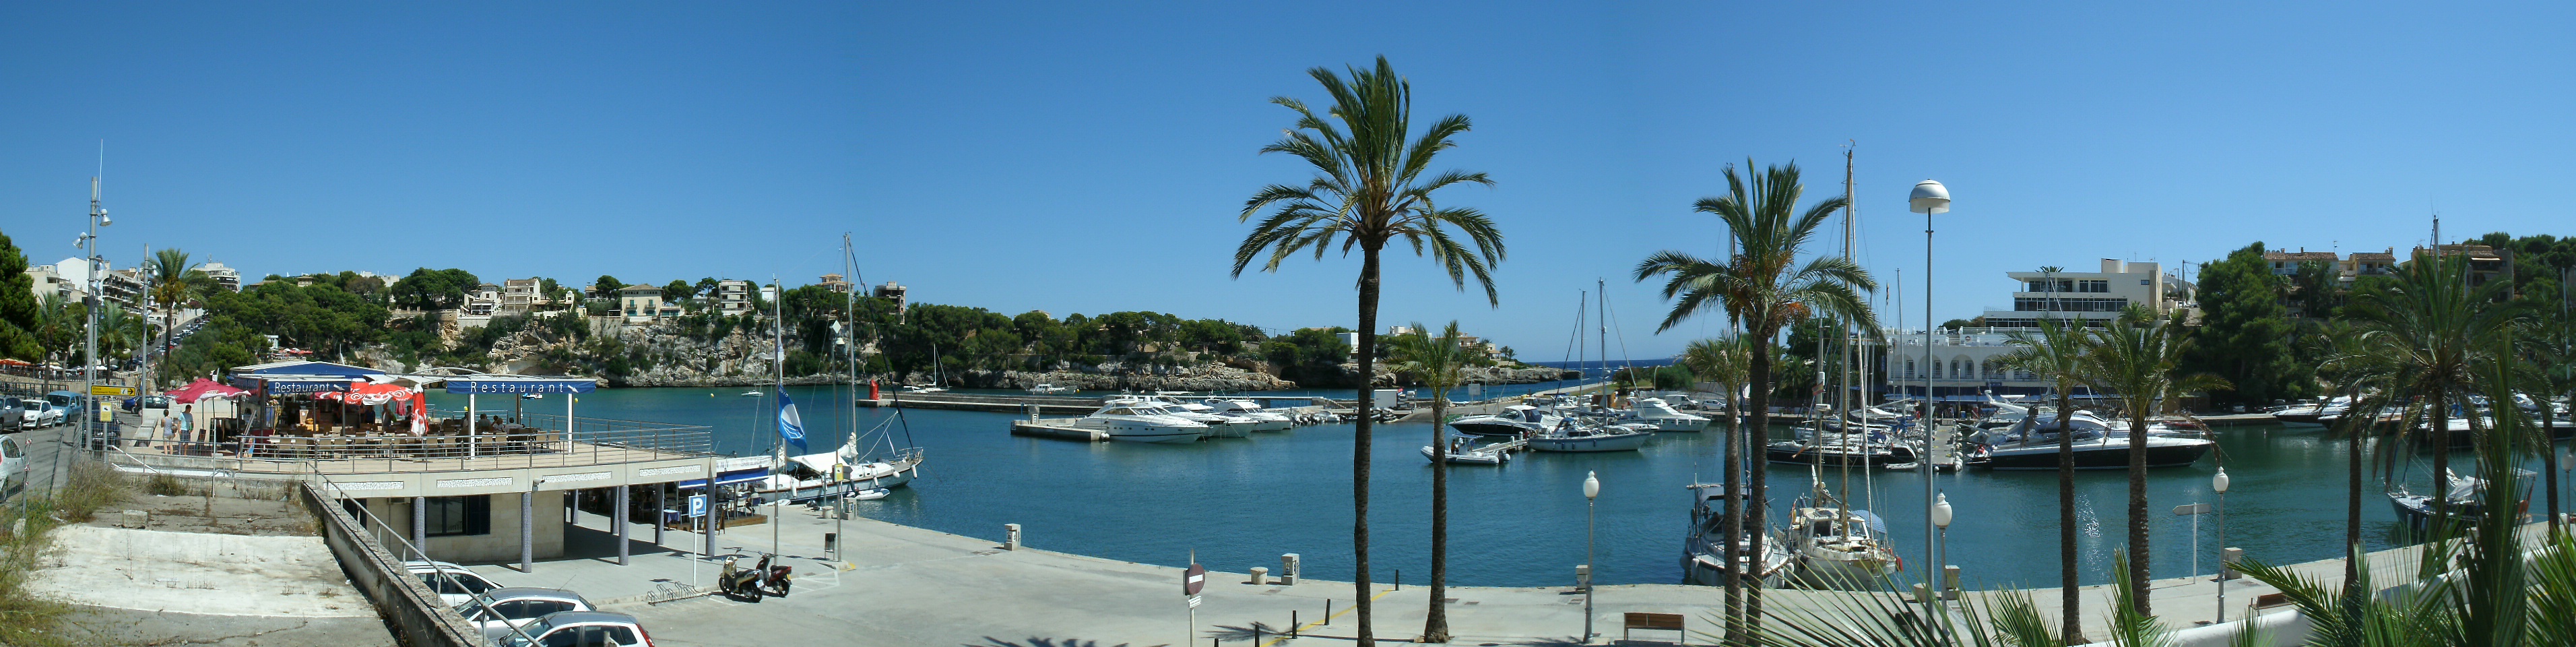 Porto Cristo Mallorca Sea Front view